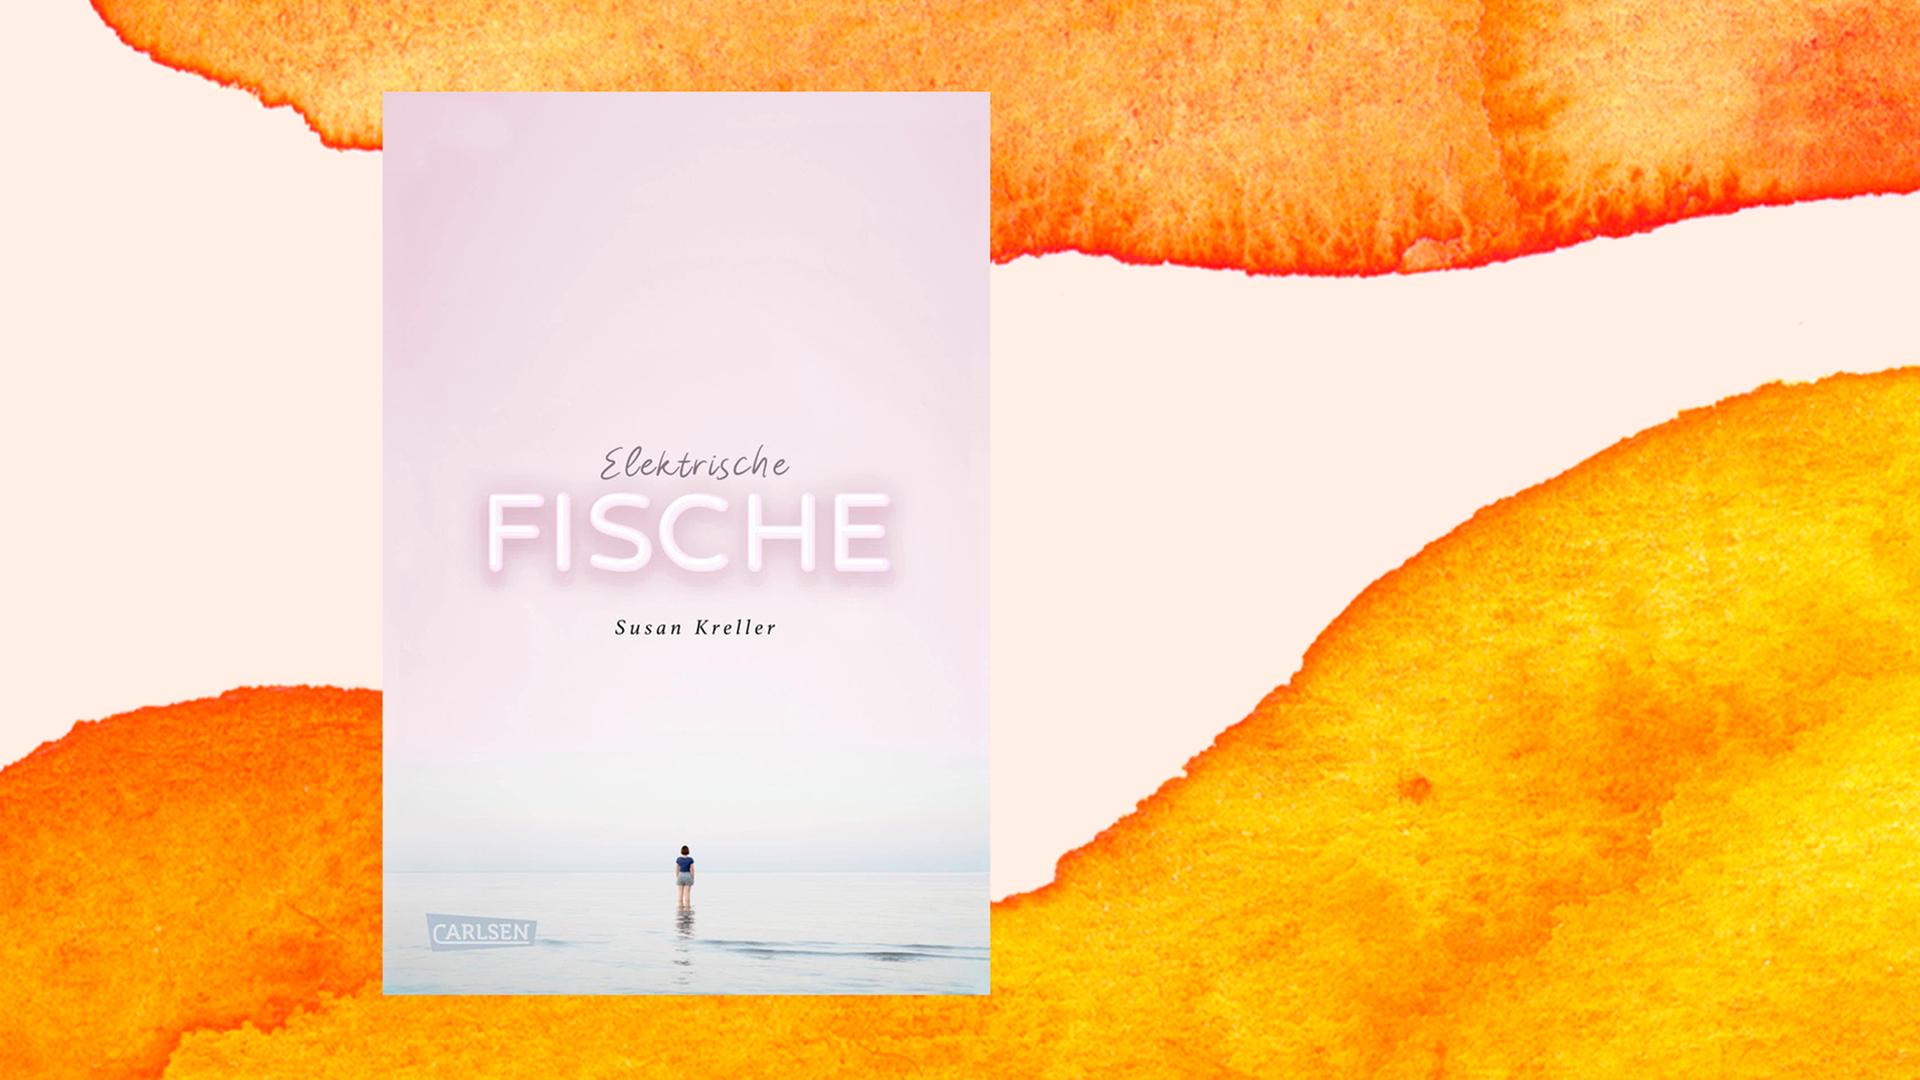 Das Buchcover zeigt einen rosa erleuchteten Himmel über einem ruhigen Gewässer, in dem kniehoch eine Frau steht, die melancholisch ins Weite blickt.